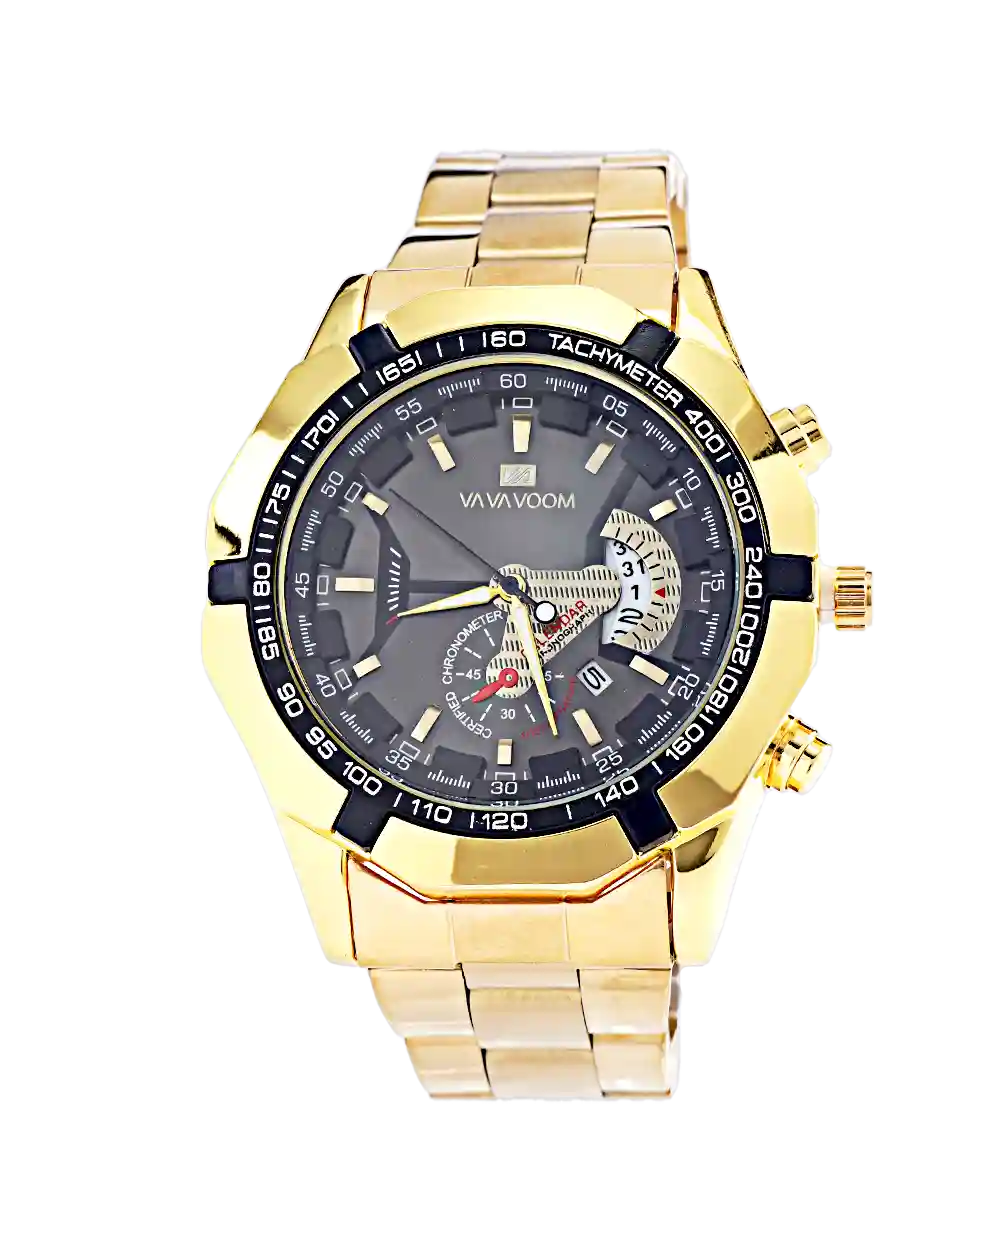 قیمت و خرید ساعت مچی مردانه VAVA VOOM مدل 1552 رنگ طلایی همراه با ارسال رایگان و جعبه هدیه ای | خرید ساعت اصلی مردانه طلایی | ساعت VAVAVOOM اصلی | ساعت مردانه شیک